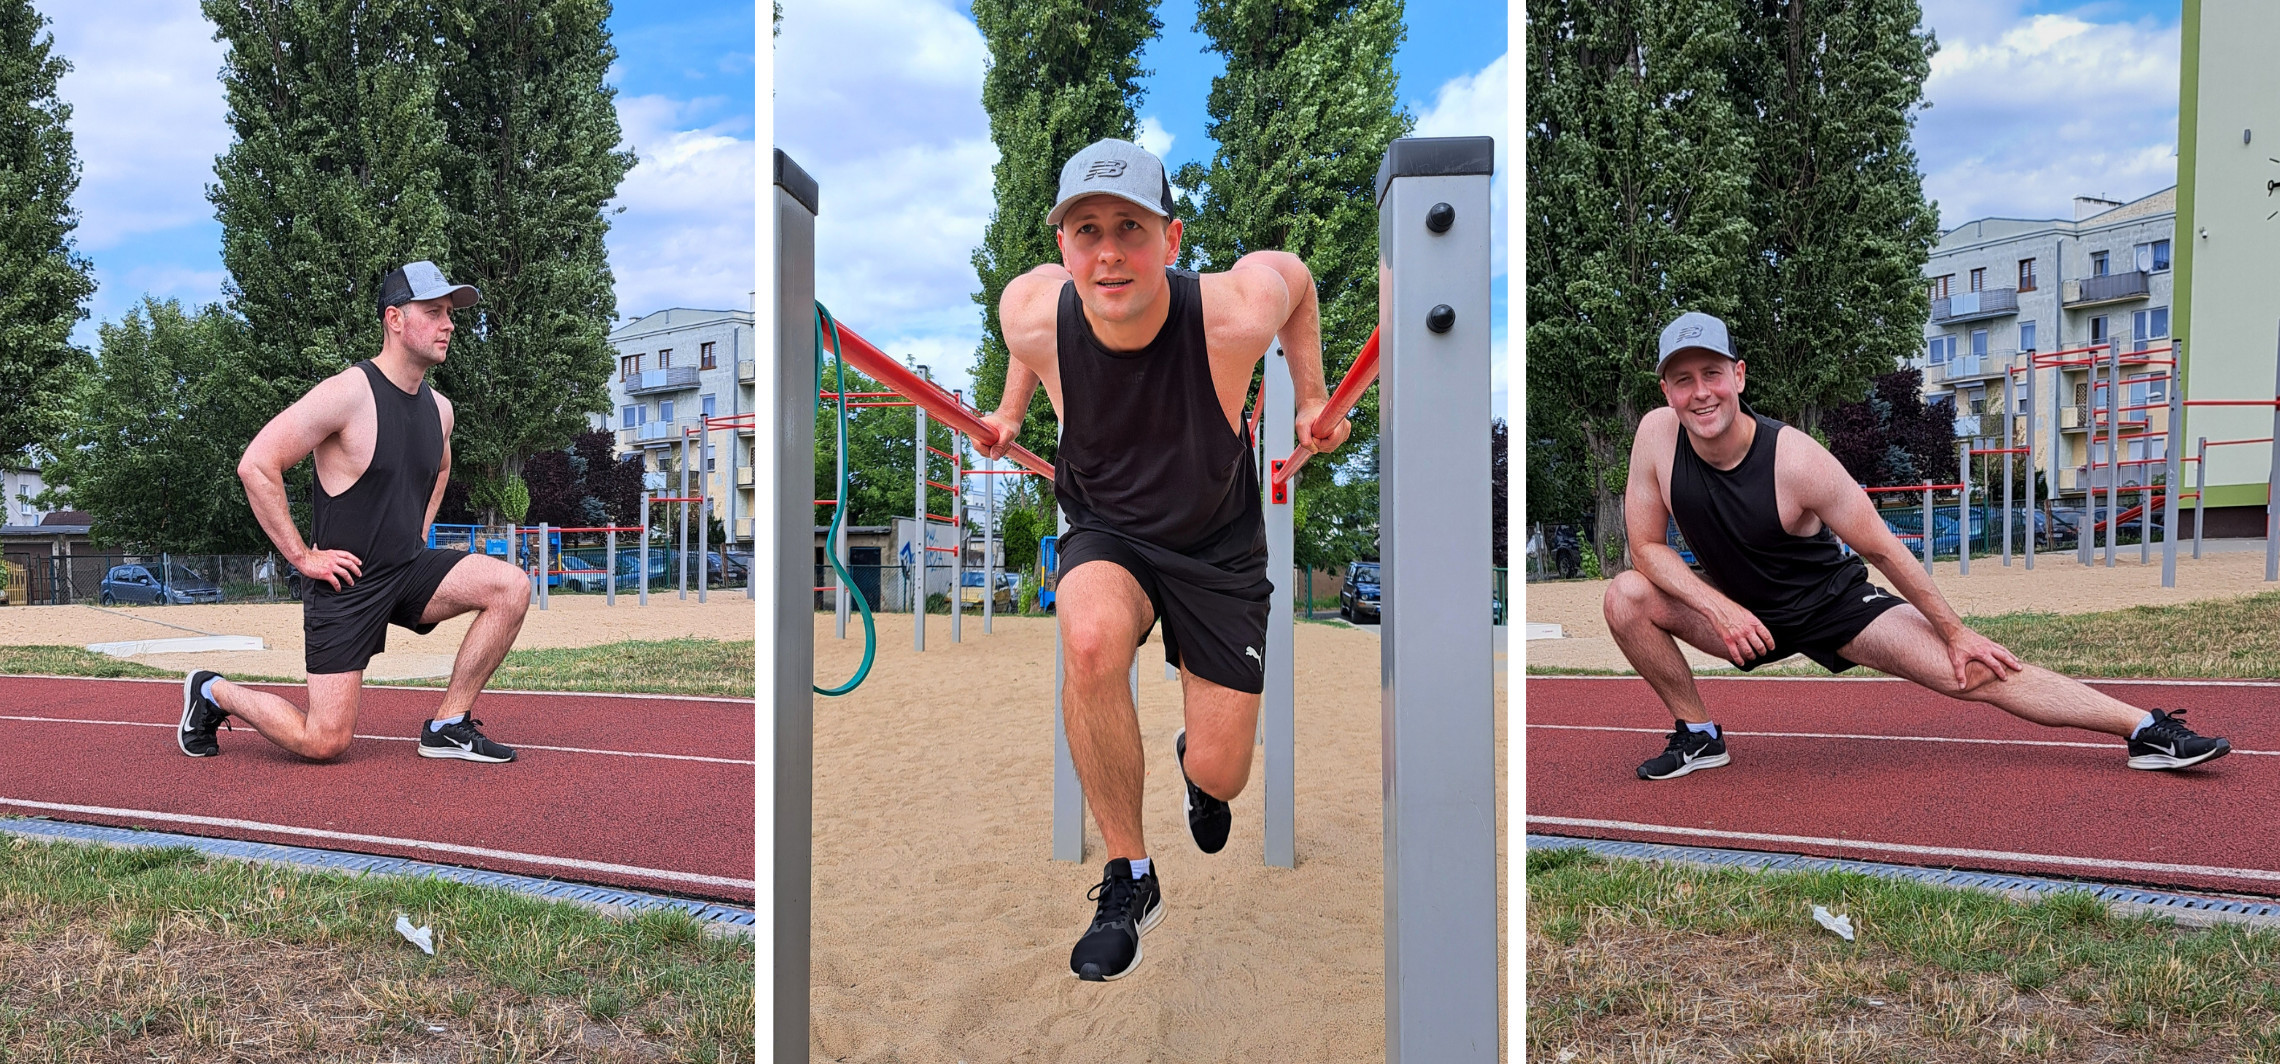 Inowrocław - Uliczna siłownia to jego sposób na udany trening